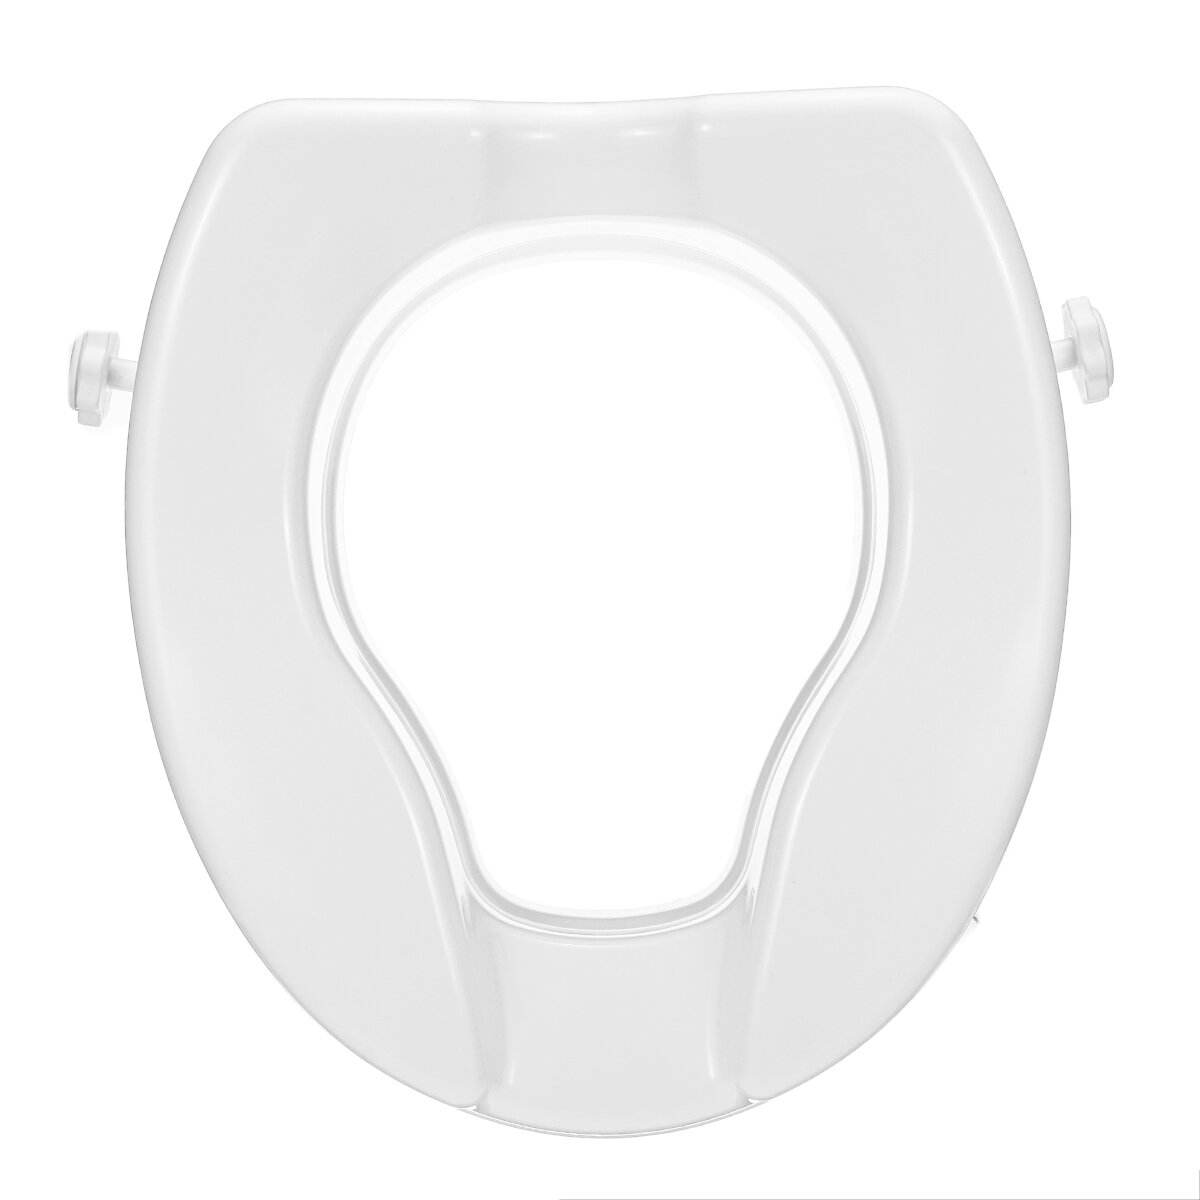 6 cm / 10 cm / 16 cm Hoogte Verhoogde Verhoogde Toiletbril Lift Veiligheid Zonder Cover